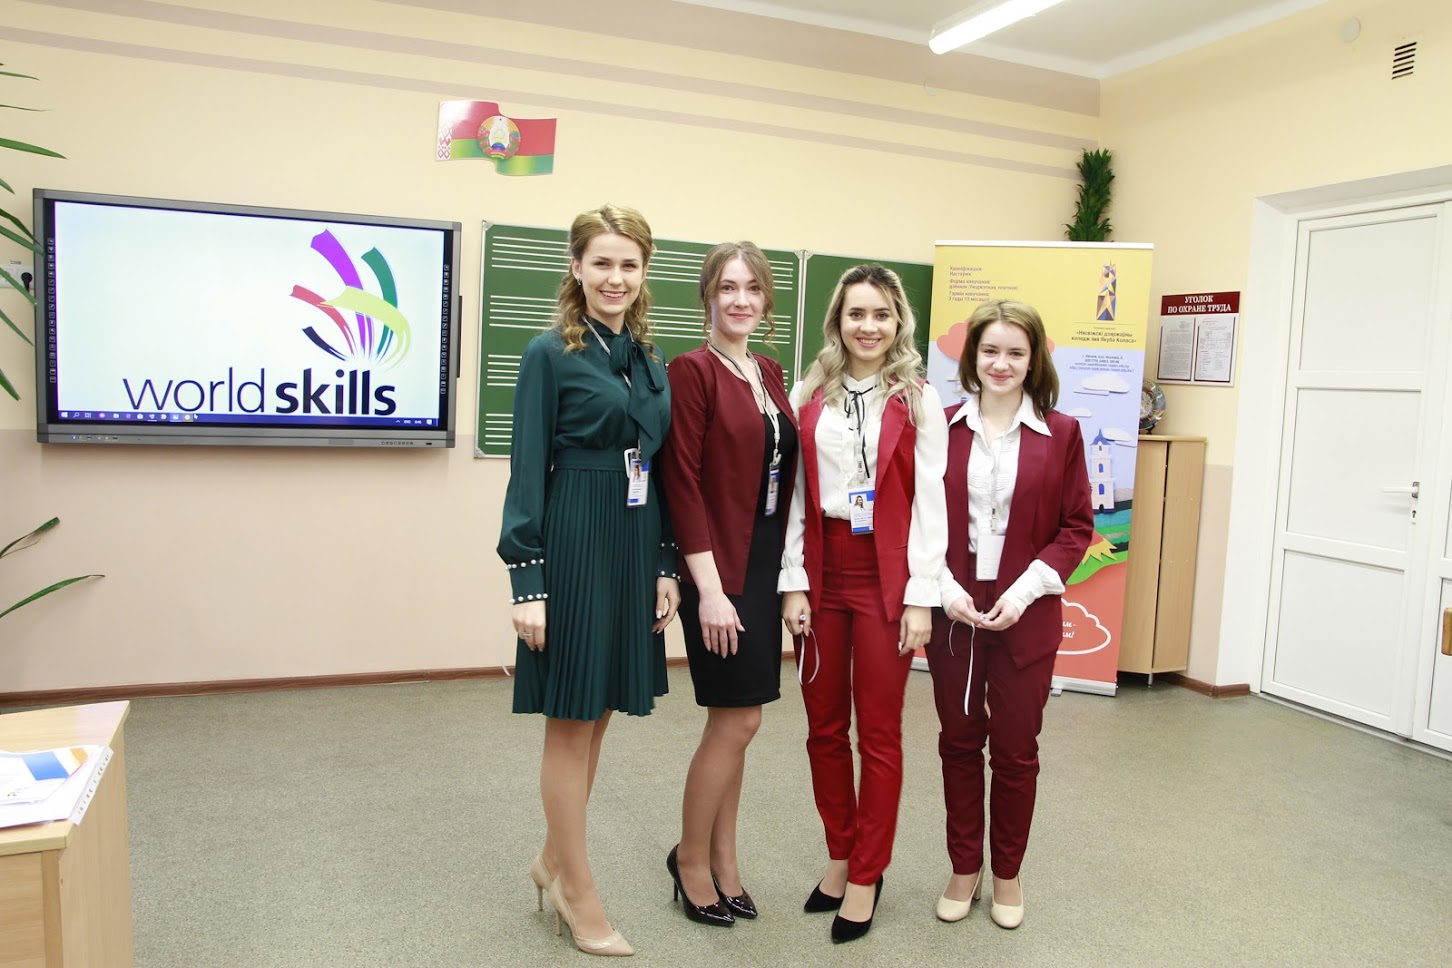 Минская область впервые провела отборочный этап конкурса профессионального мастерства «WorldSkills» среди учреждений среднего специального образования по компетенции «Начальное образование».